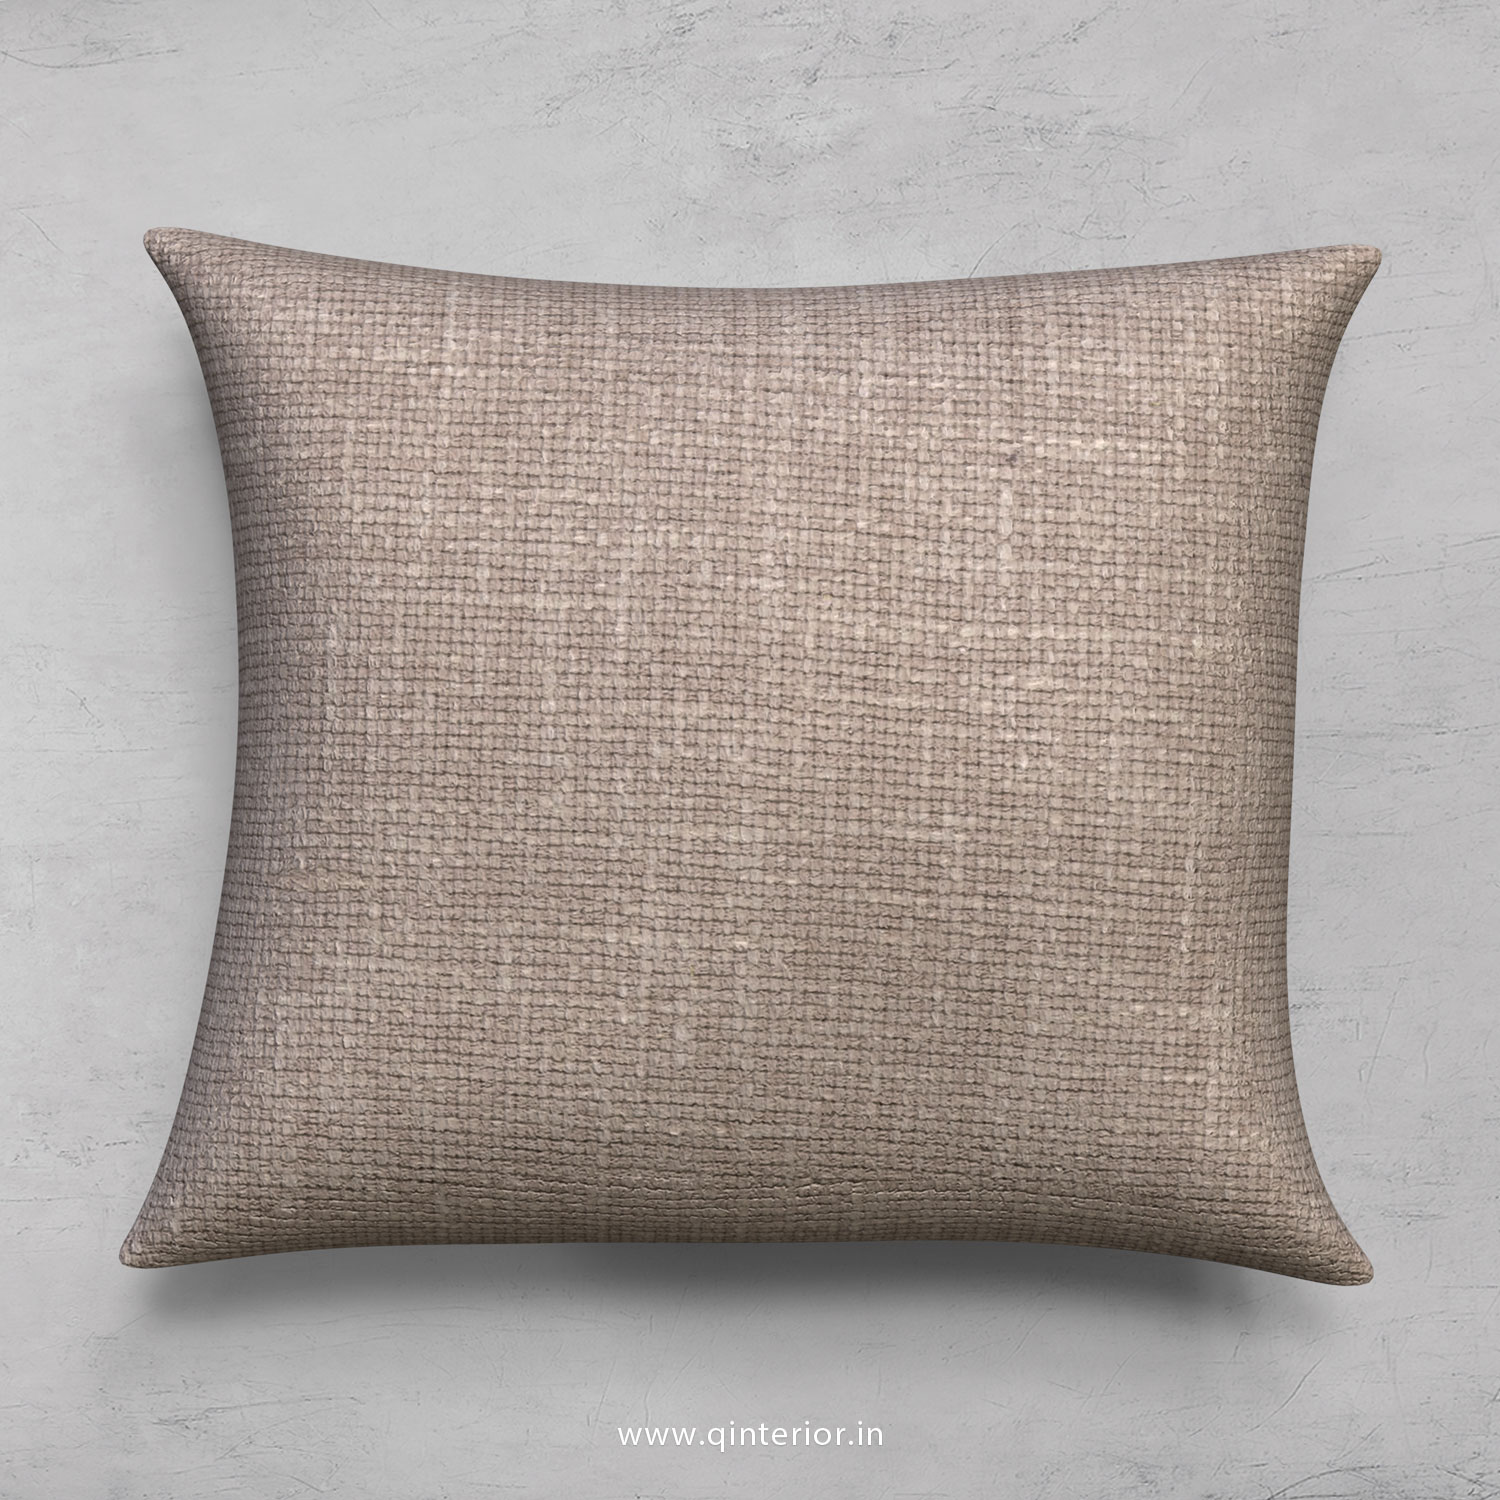 Cushion With Cushion Cover in Cotton Plain - CUS001 CP02